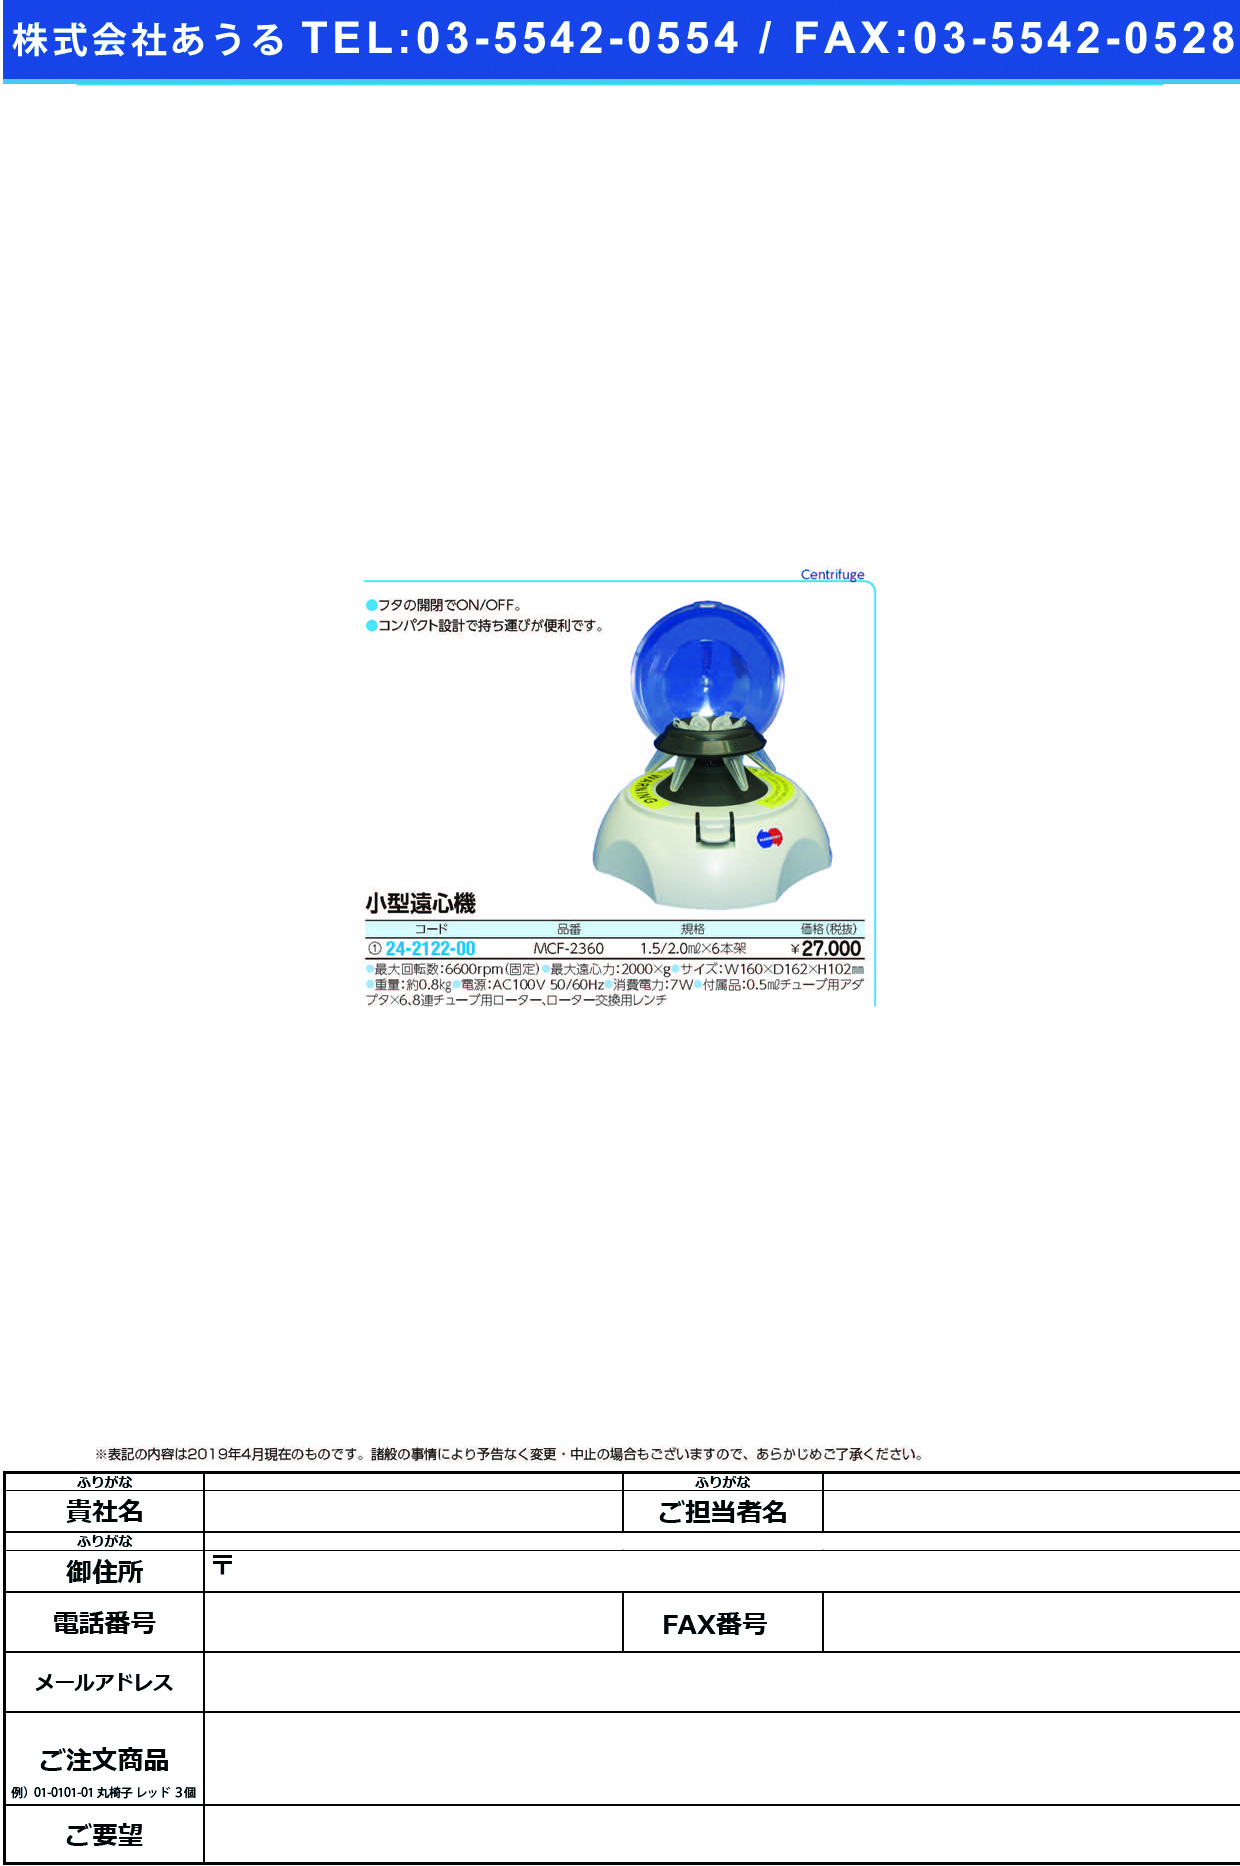 (24-2122-00)小型遠心機 MCF-2360 ｺｶﾞﾀｴﾝｼﾝｷ【1台単位】【2019年カタログ商品】